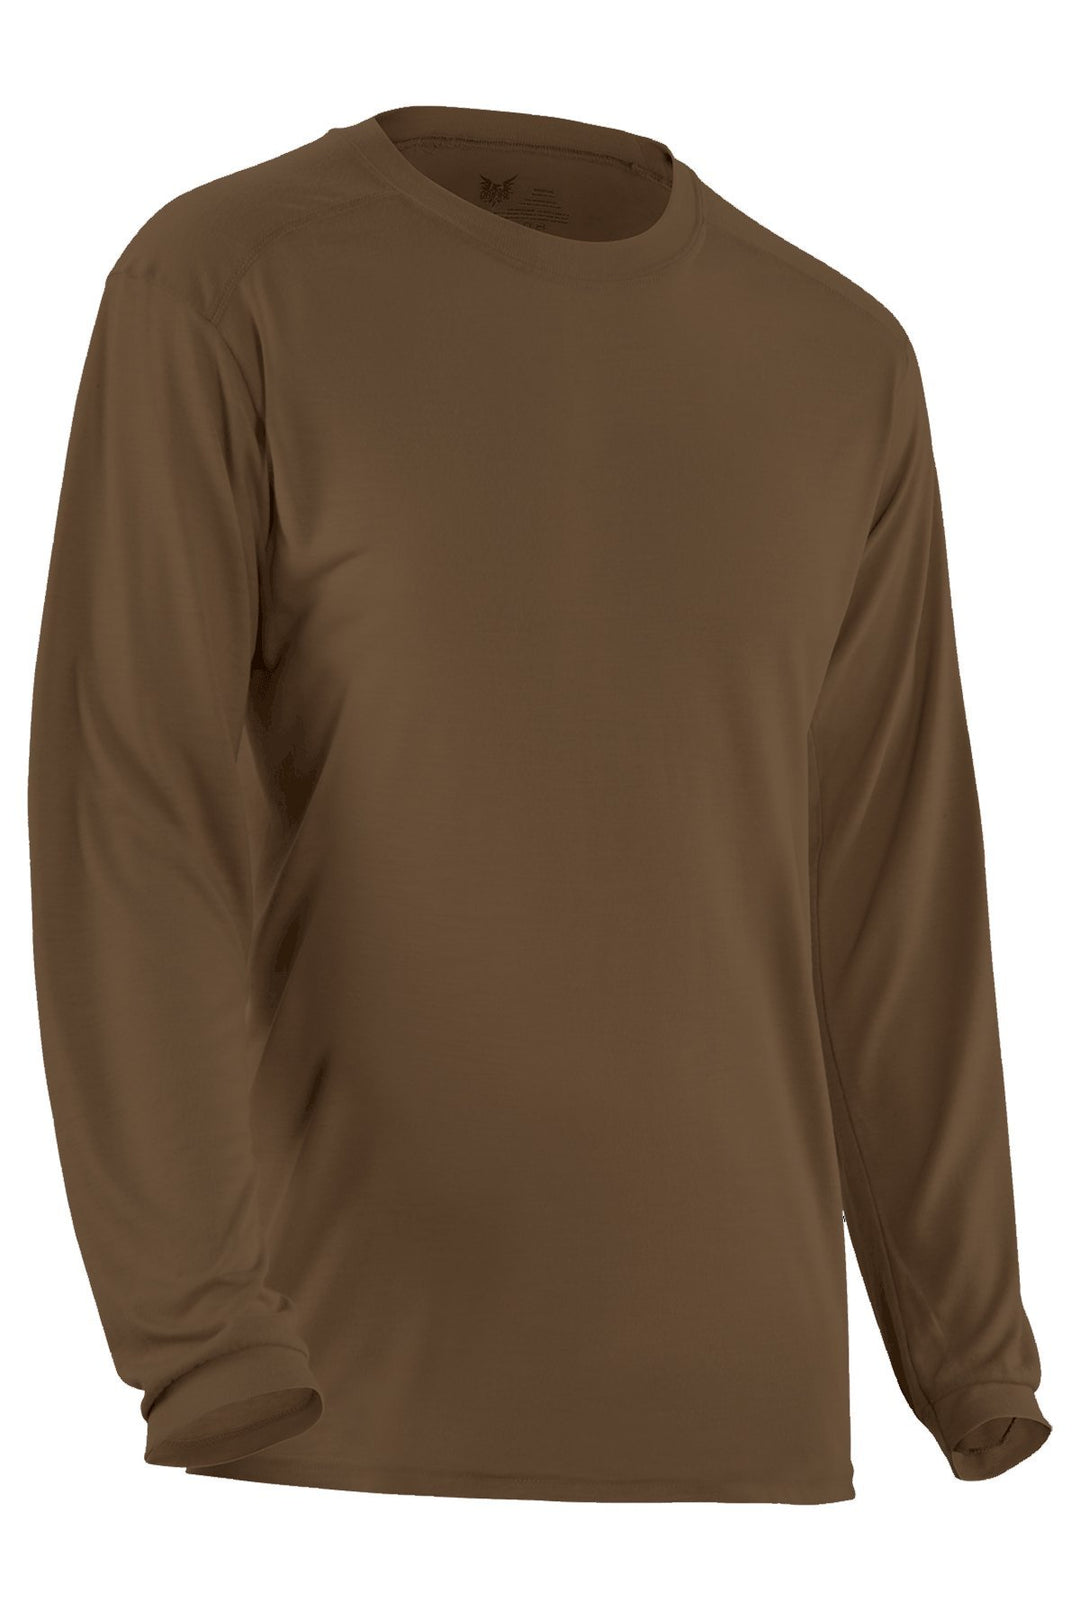 Apparel - Tops - Base Layer - DRIFIRE Military Ultra-Lightweight FR Long Sleeve T-Shirt